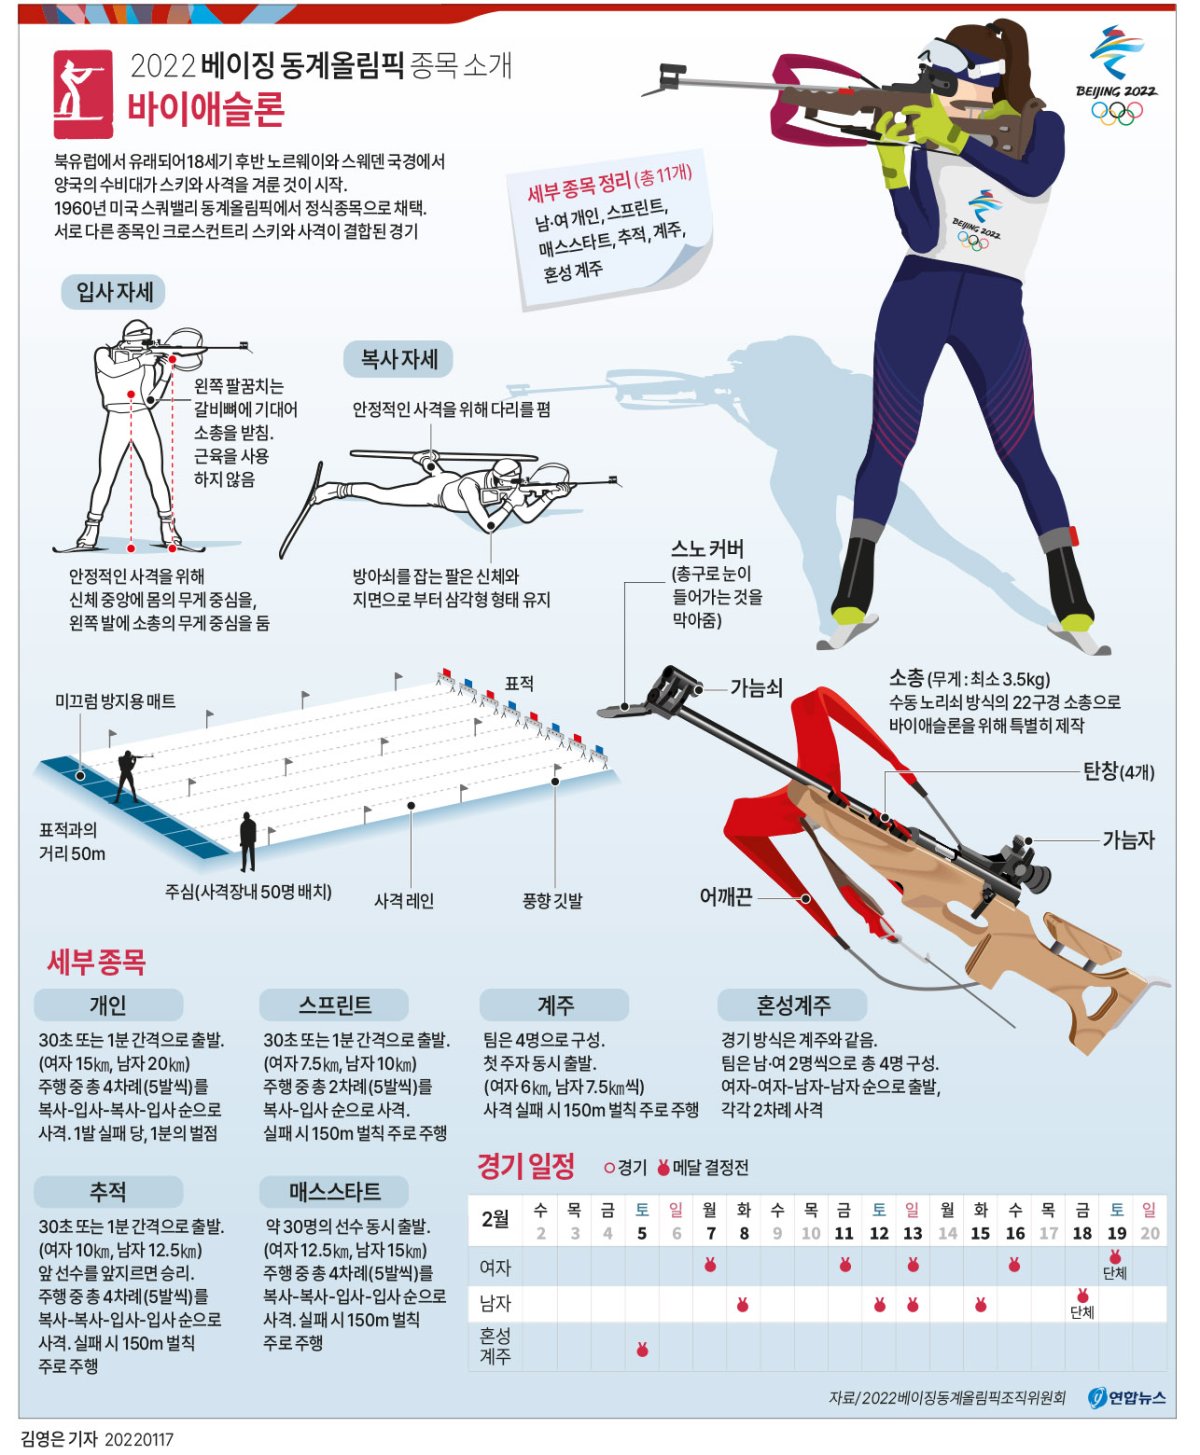 [그래픽] 베이징 동계올림픽 종목 소개 - 바이애슬론